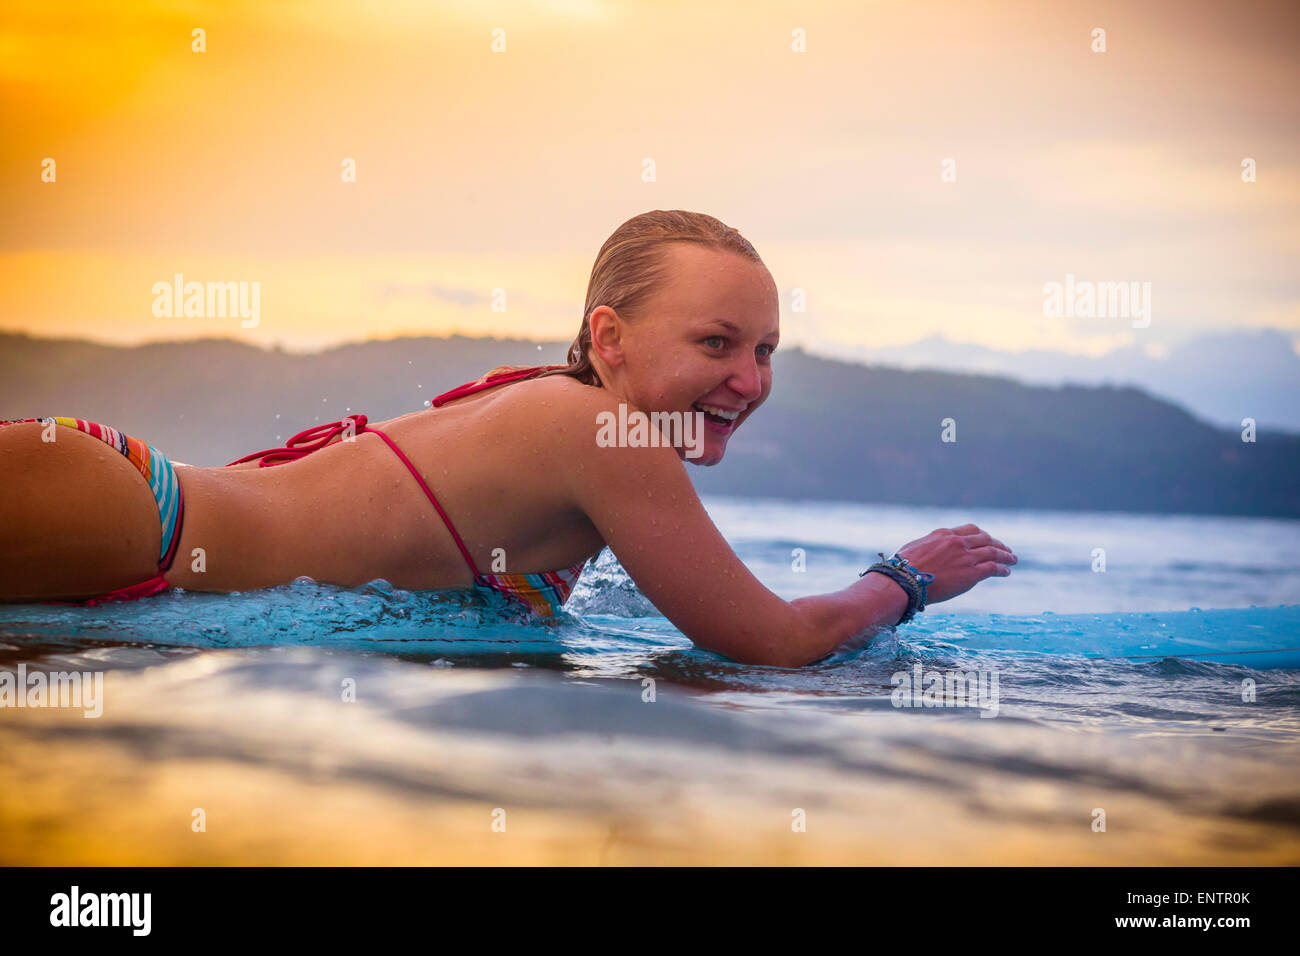 Surfer girl. Stock Photo